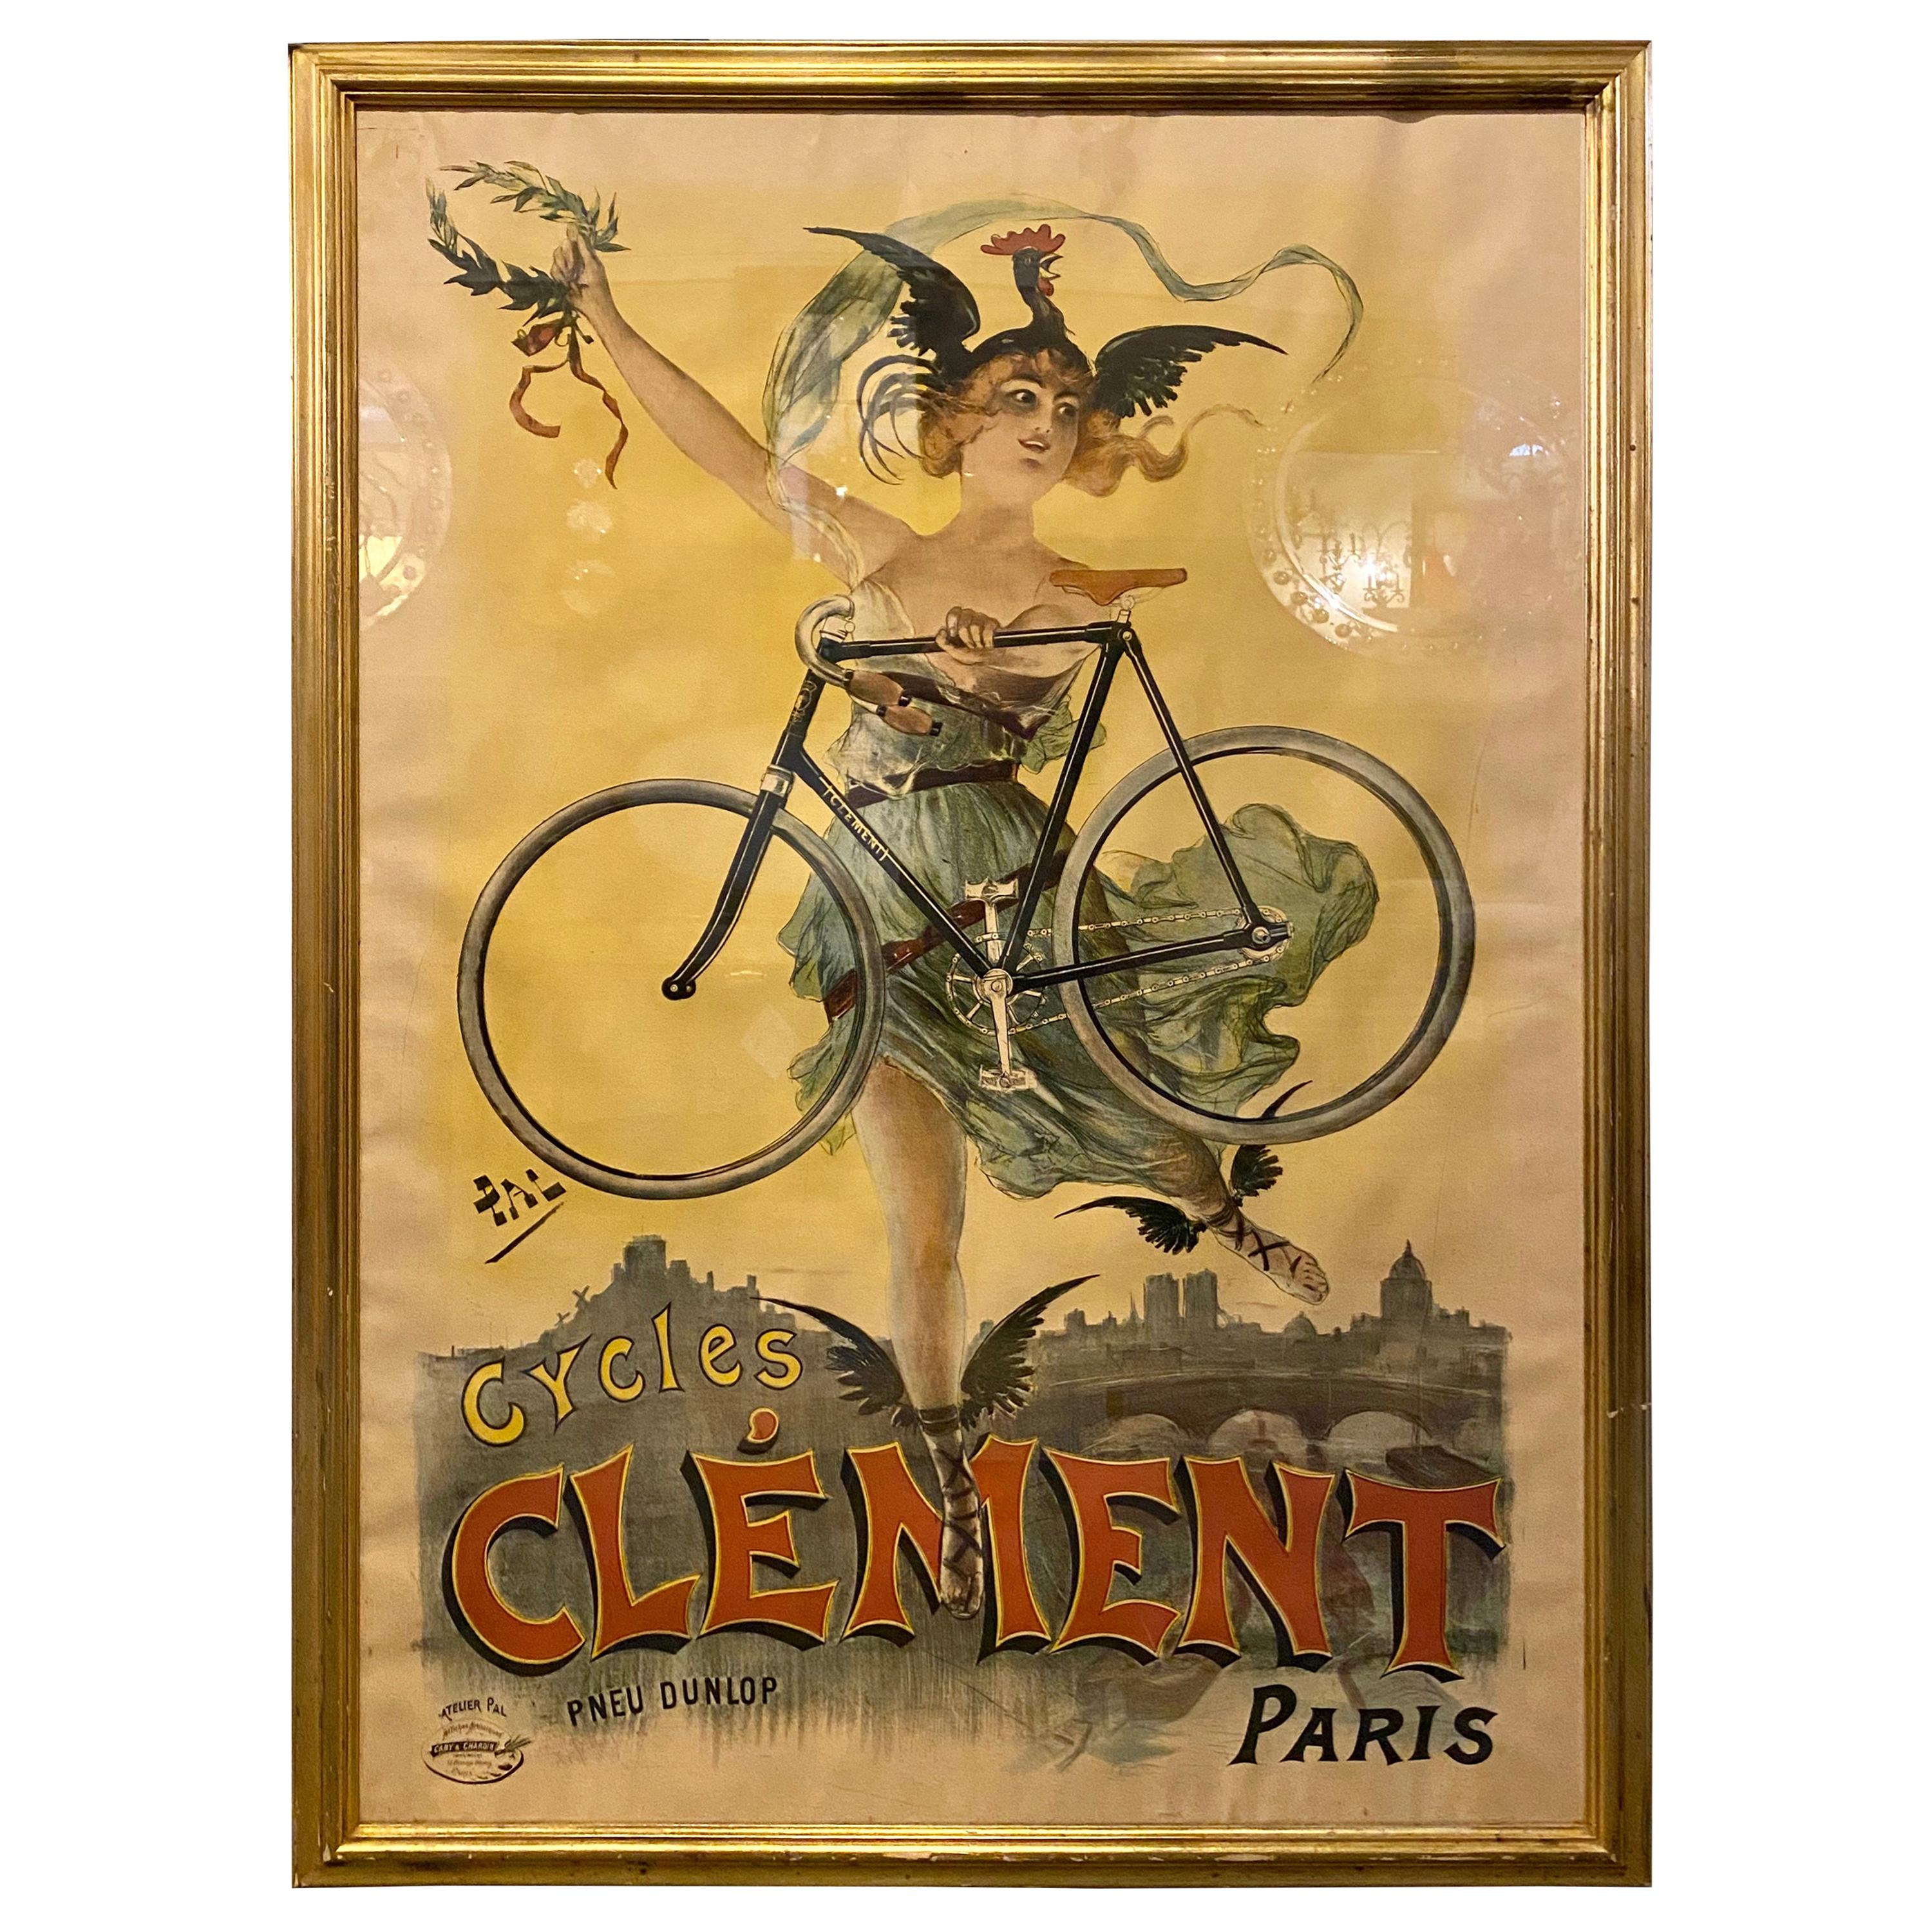 Original Pal Poster Cycles Clement Paris by Pneu Dunlop Framed